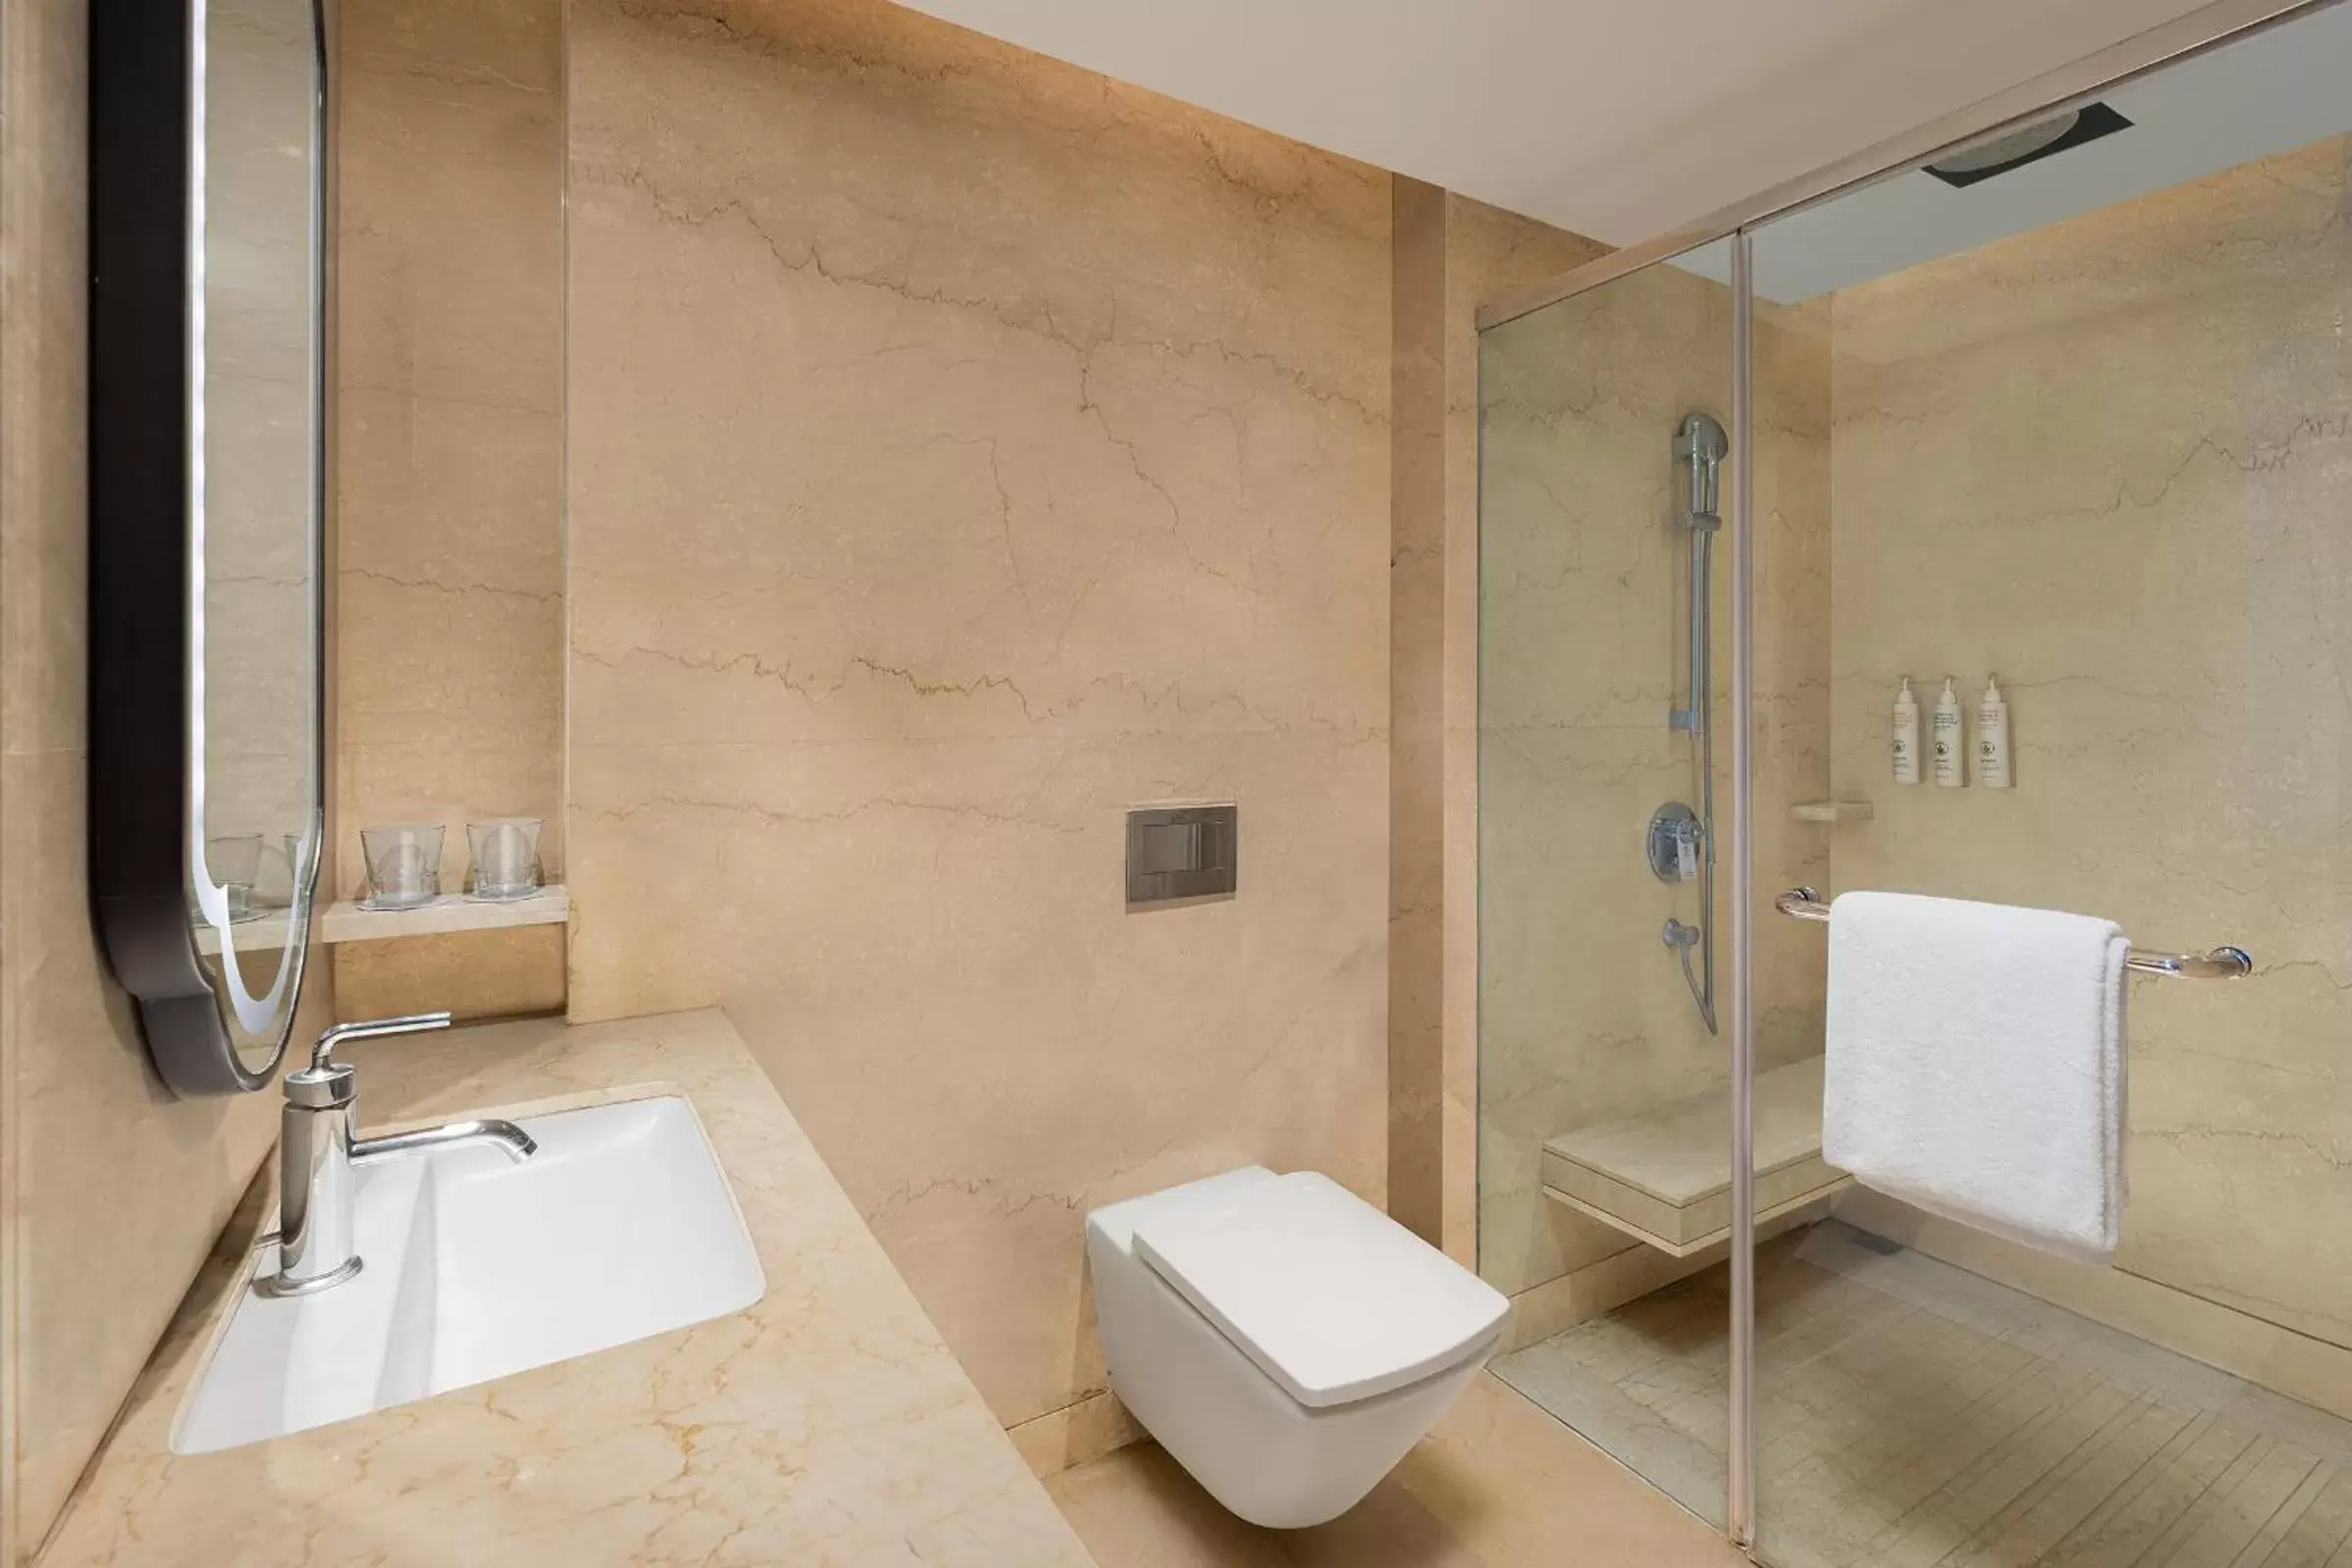 Bathroom in Indore Marriott Hotel